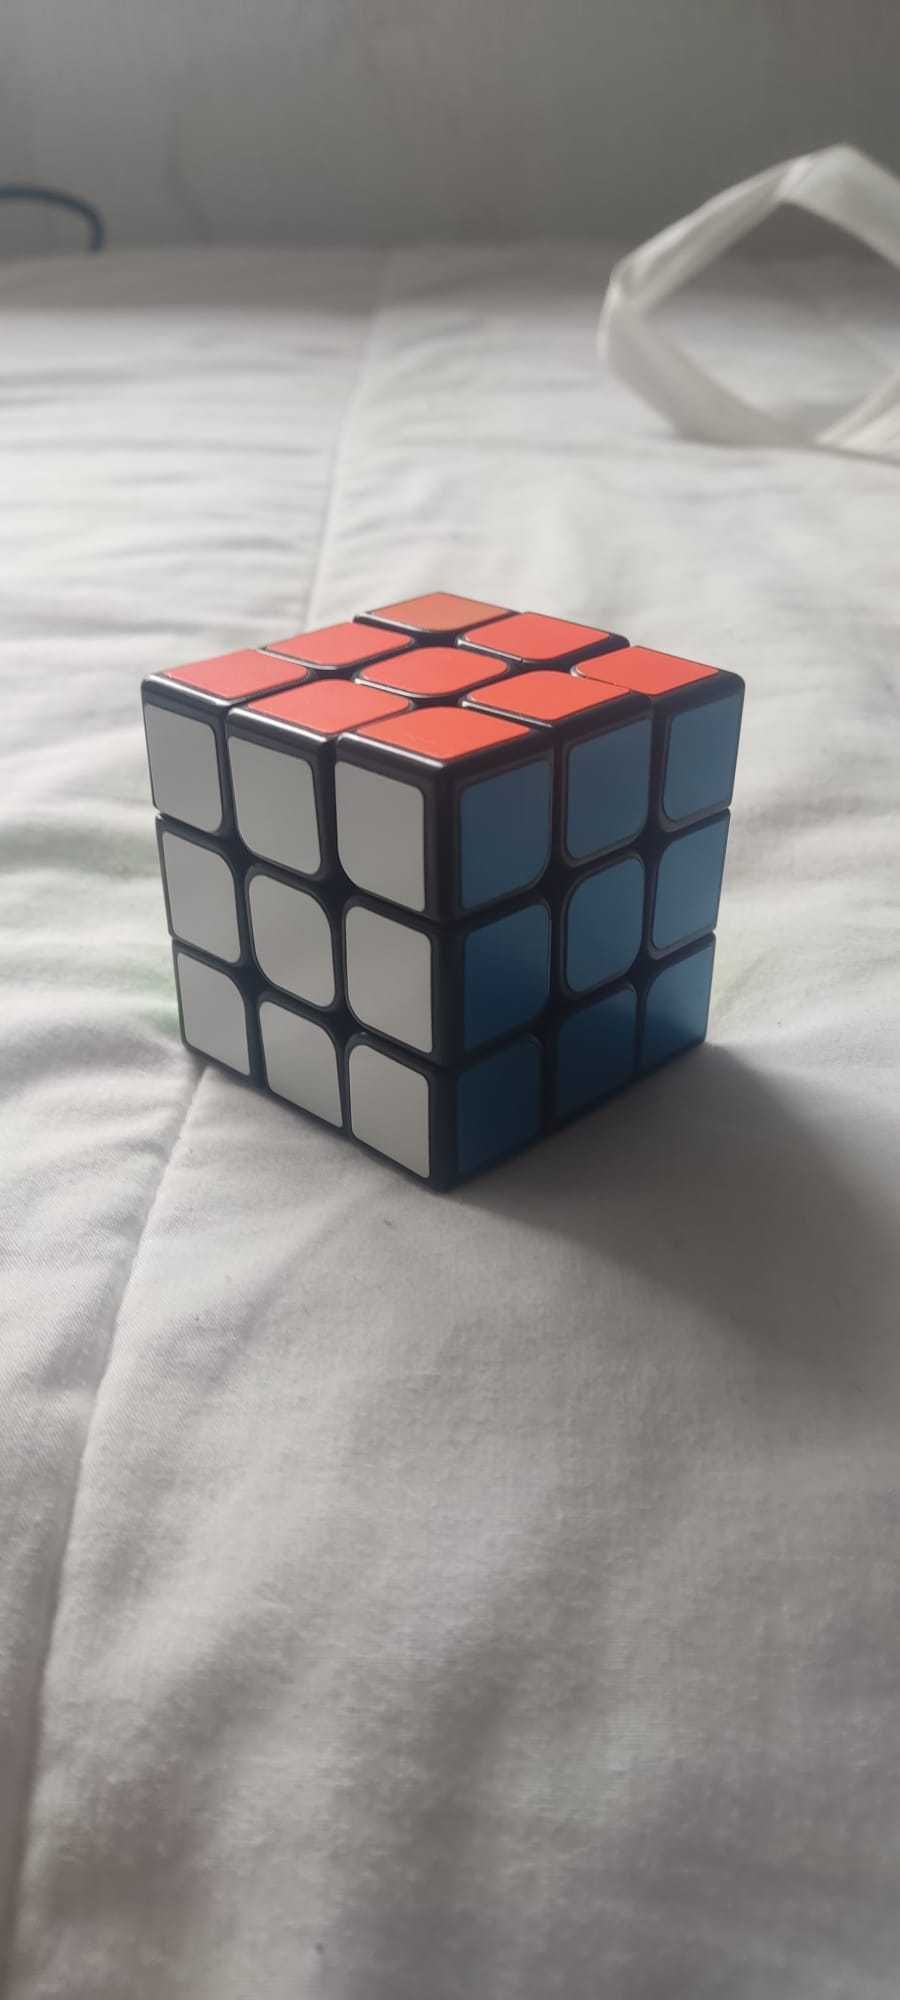 Cubo Mágico 3x3!